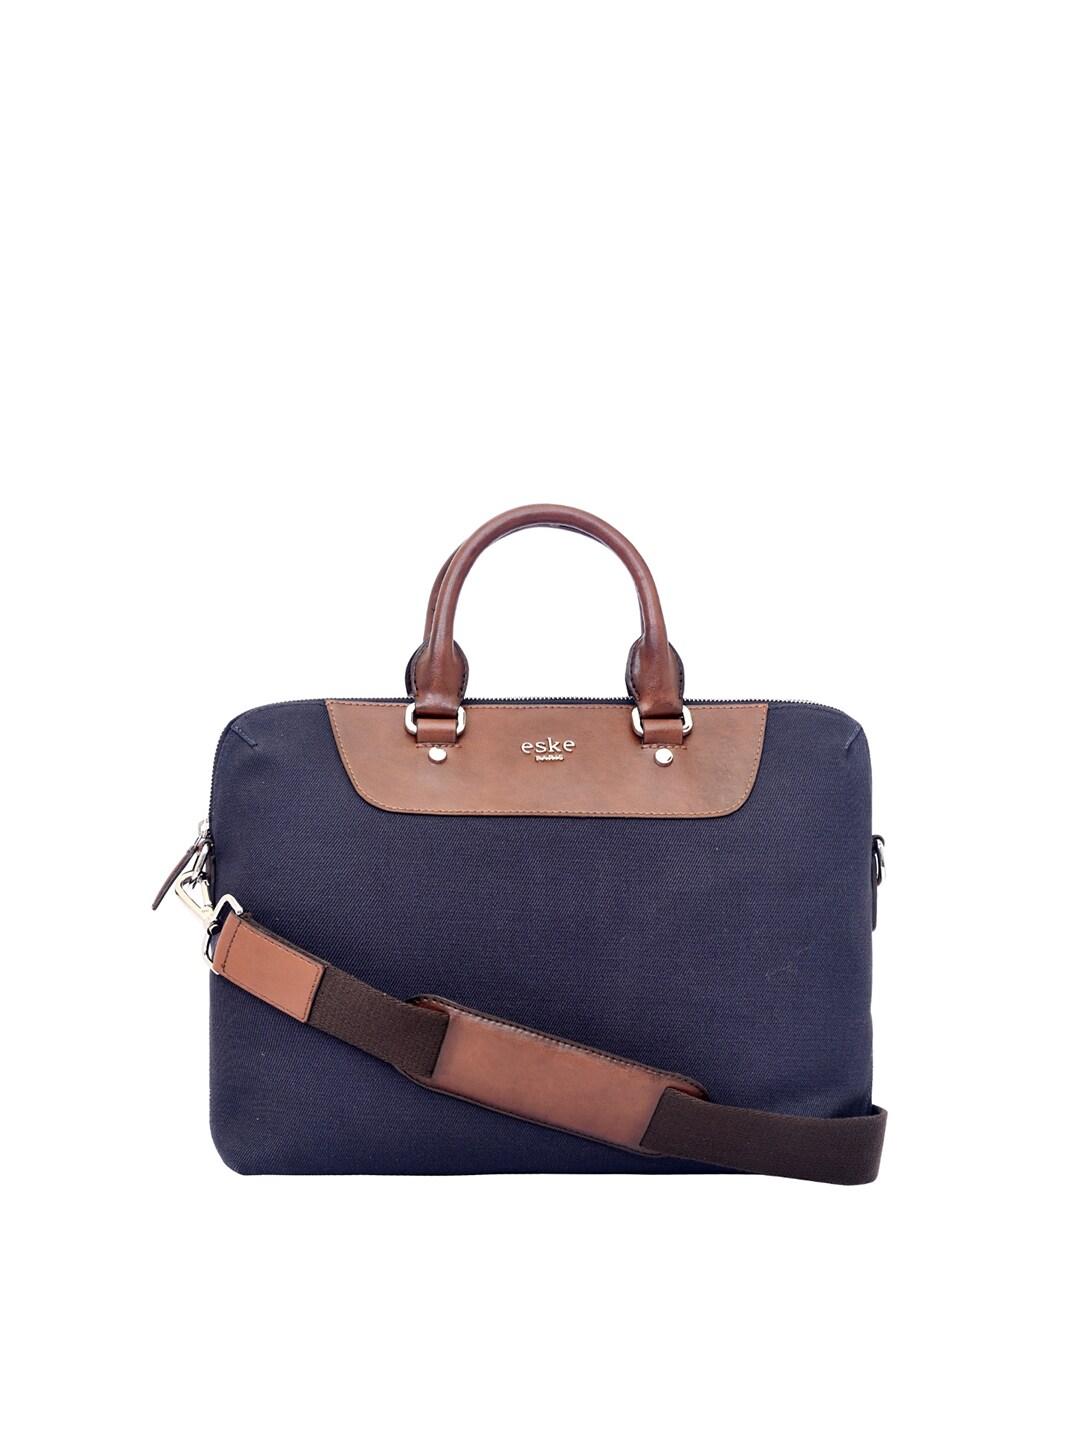 eske-men-navy-blue-&-brown-leather-laptop-bag